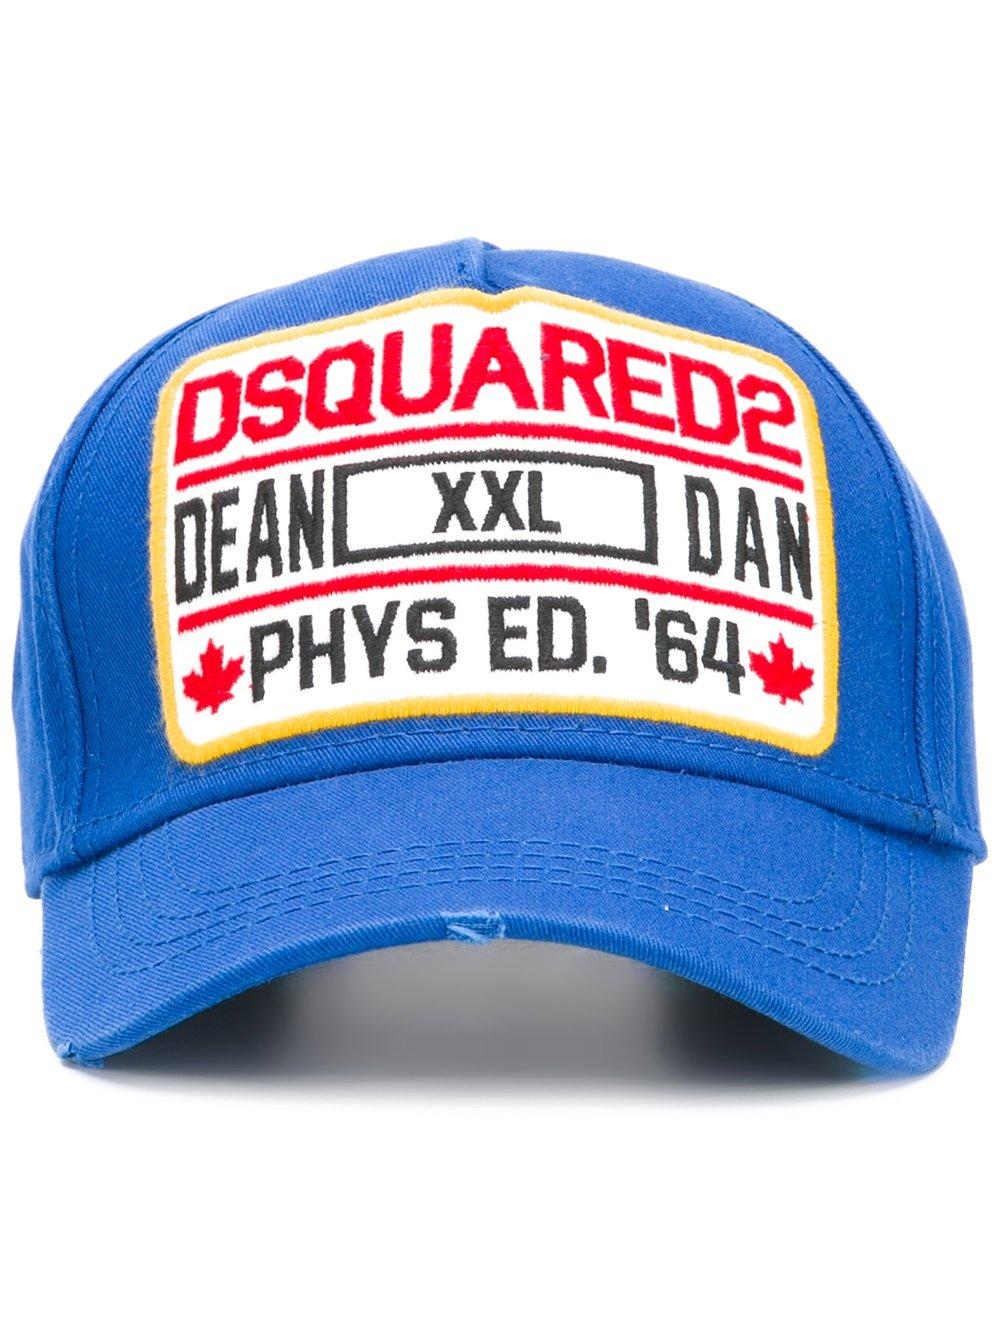 dsquared2 dean xxl dan